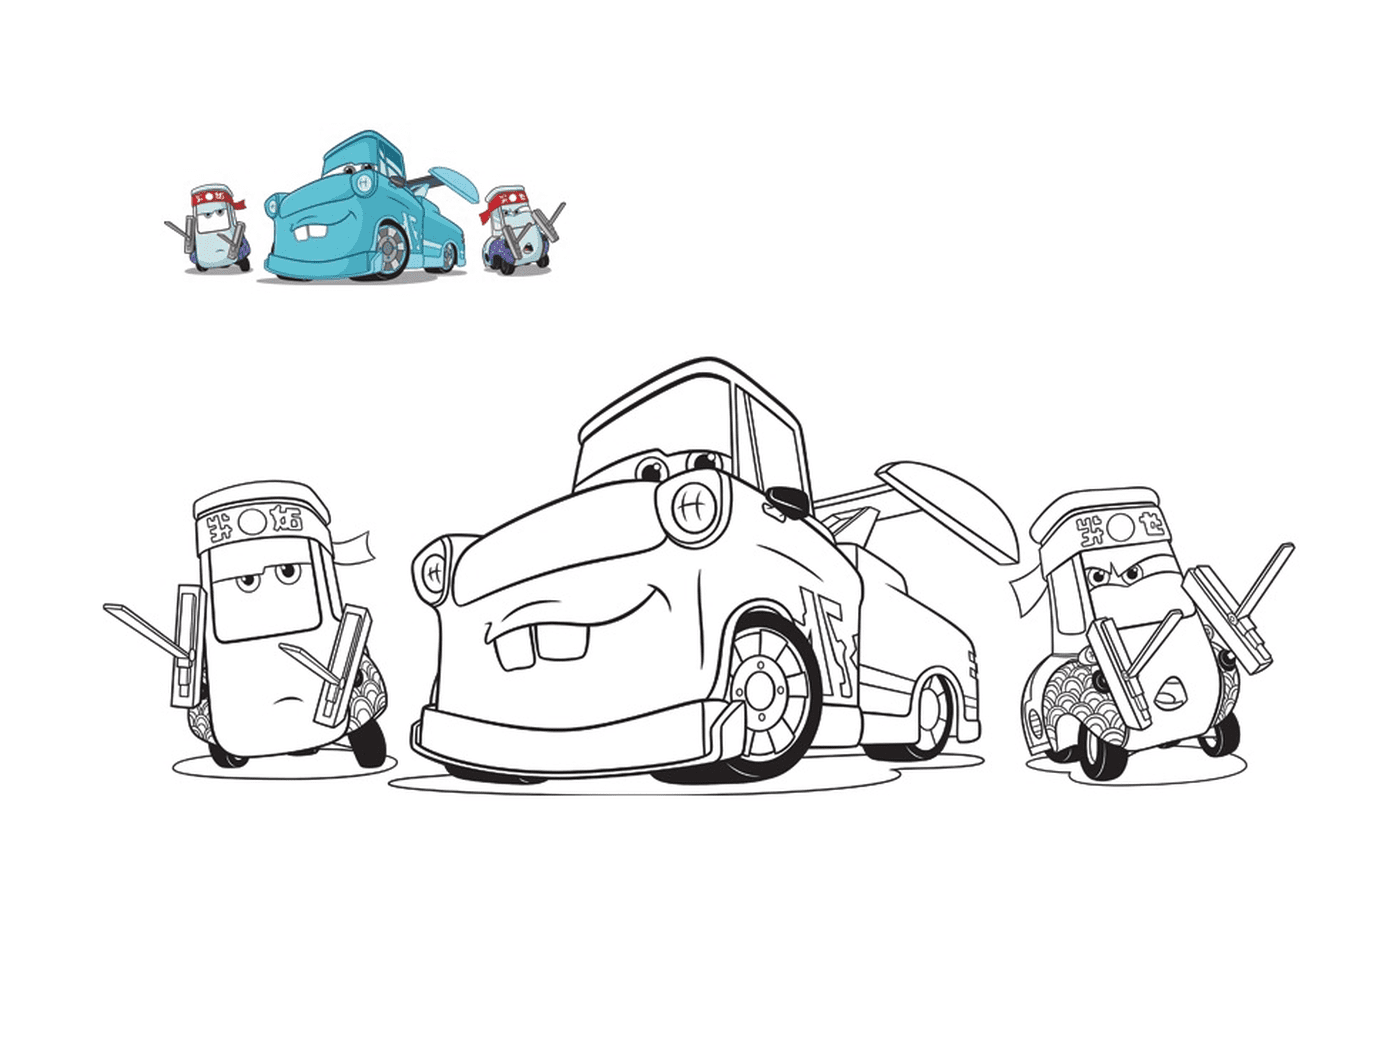  3辆汽车,吉多及其朋友,机械拖拖车,一辆车行,地上有一辆汽车 